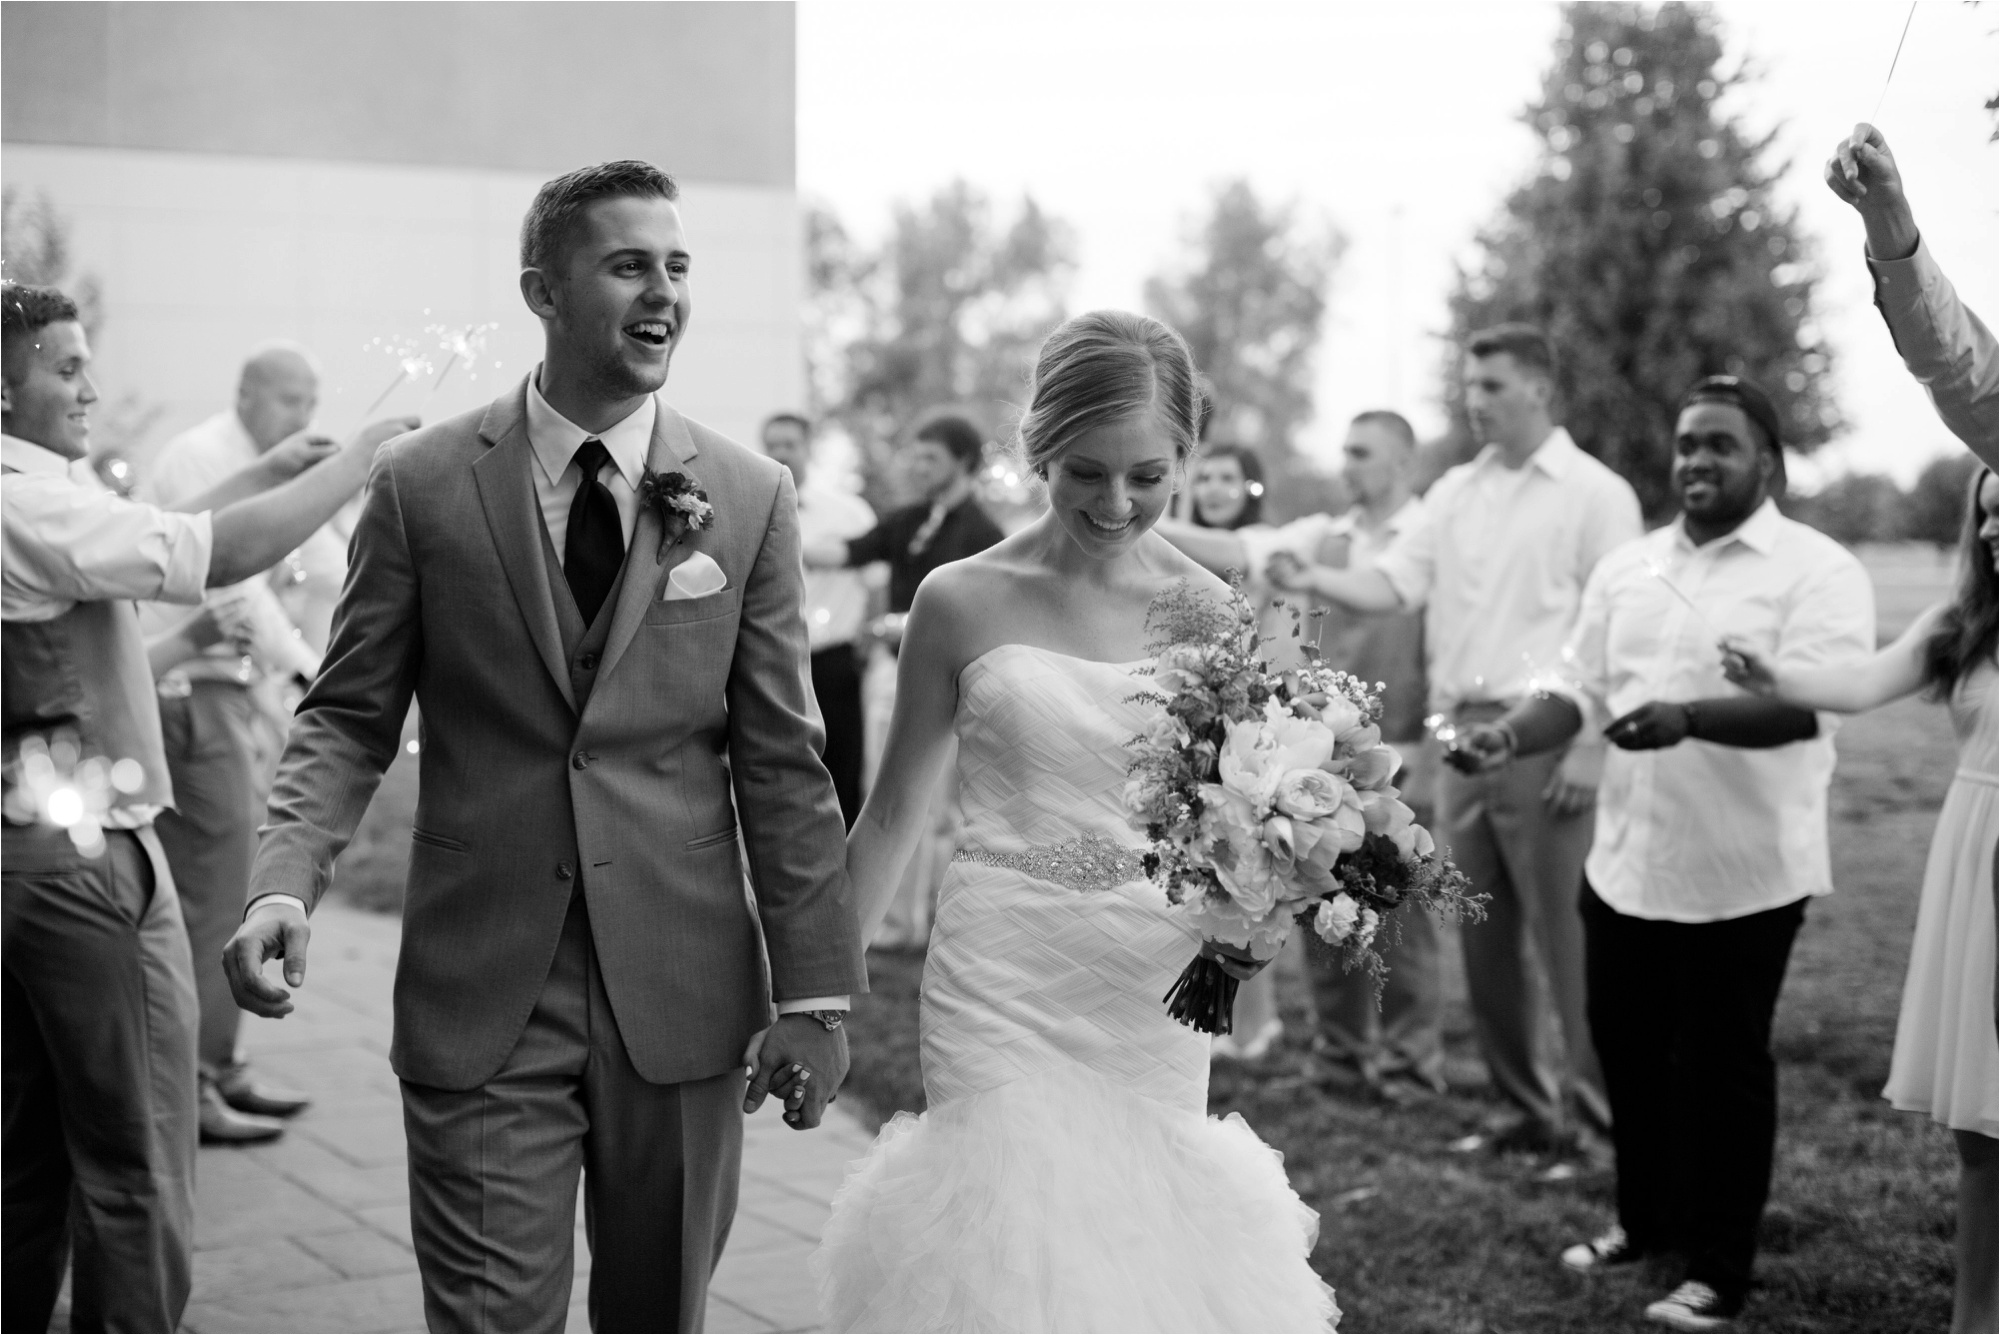 Caitlin and Luke Photography, Bloomington Normal Wedding Photographers, Illinois Wedding Photographers, Illinois Husband and Wife Wedding Photography Team_0358.jpg